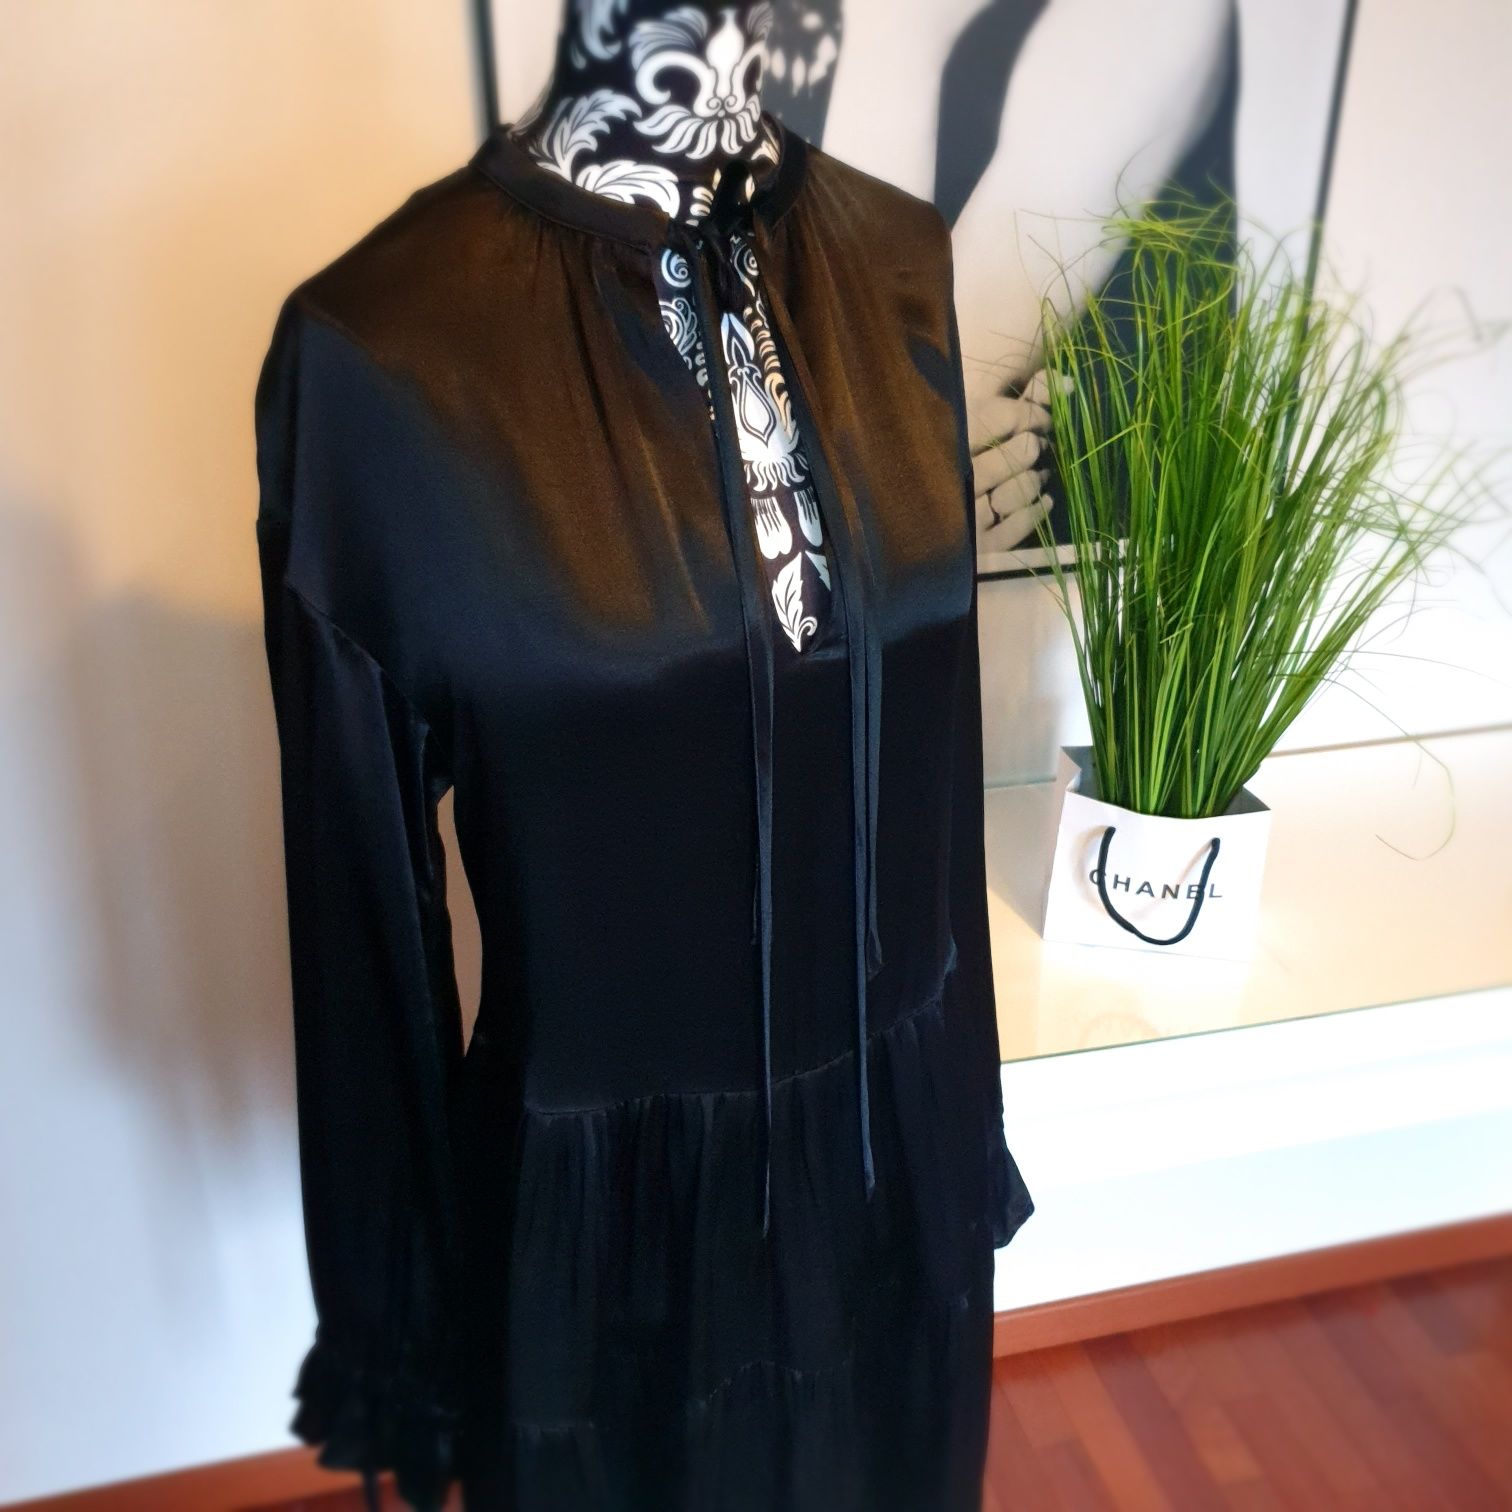 Sukienka mała czarna elegancka princeska koktajlowa H&M r.xs/34 Nowa